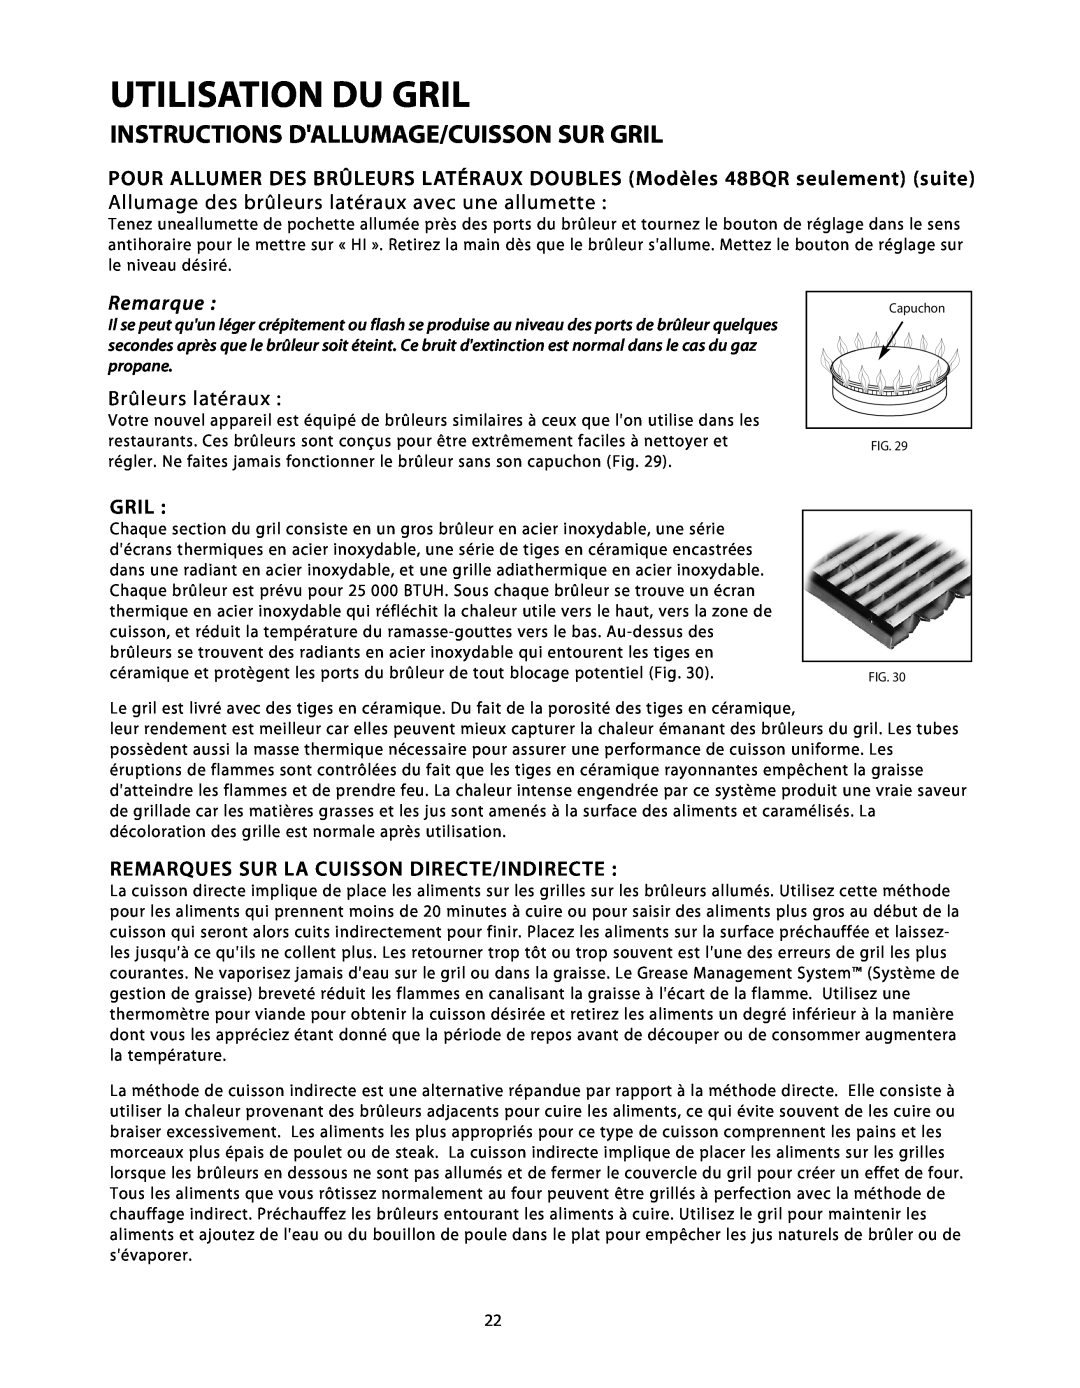 DCS BGB48-BQAR manual Instructions Dallumage/Cuisson Sur Gril, Allumage des brûleurs latéraux avec une allumette, Remarque 